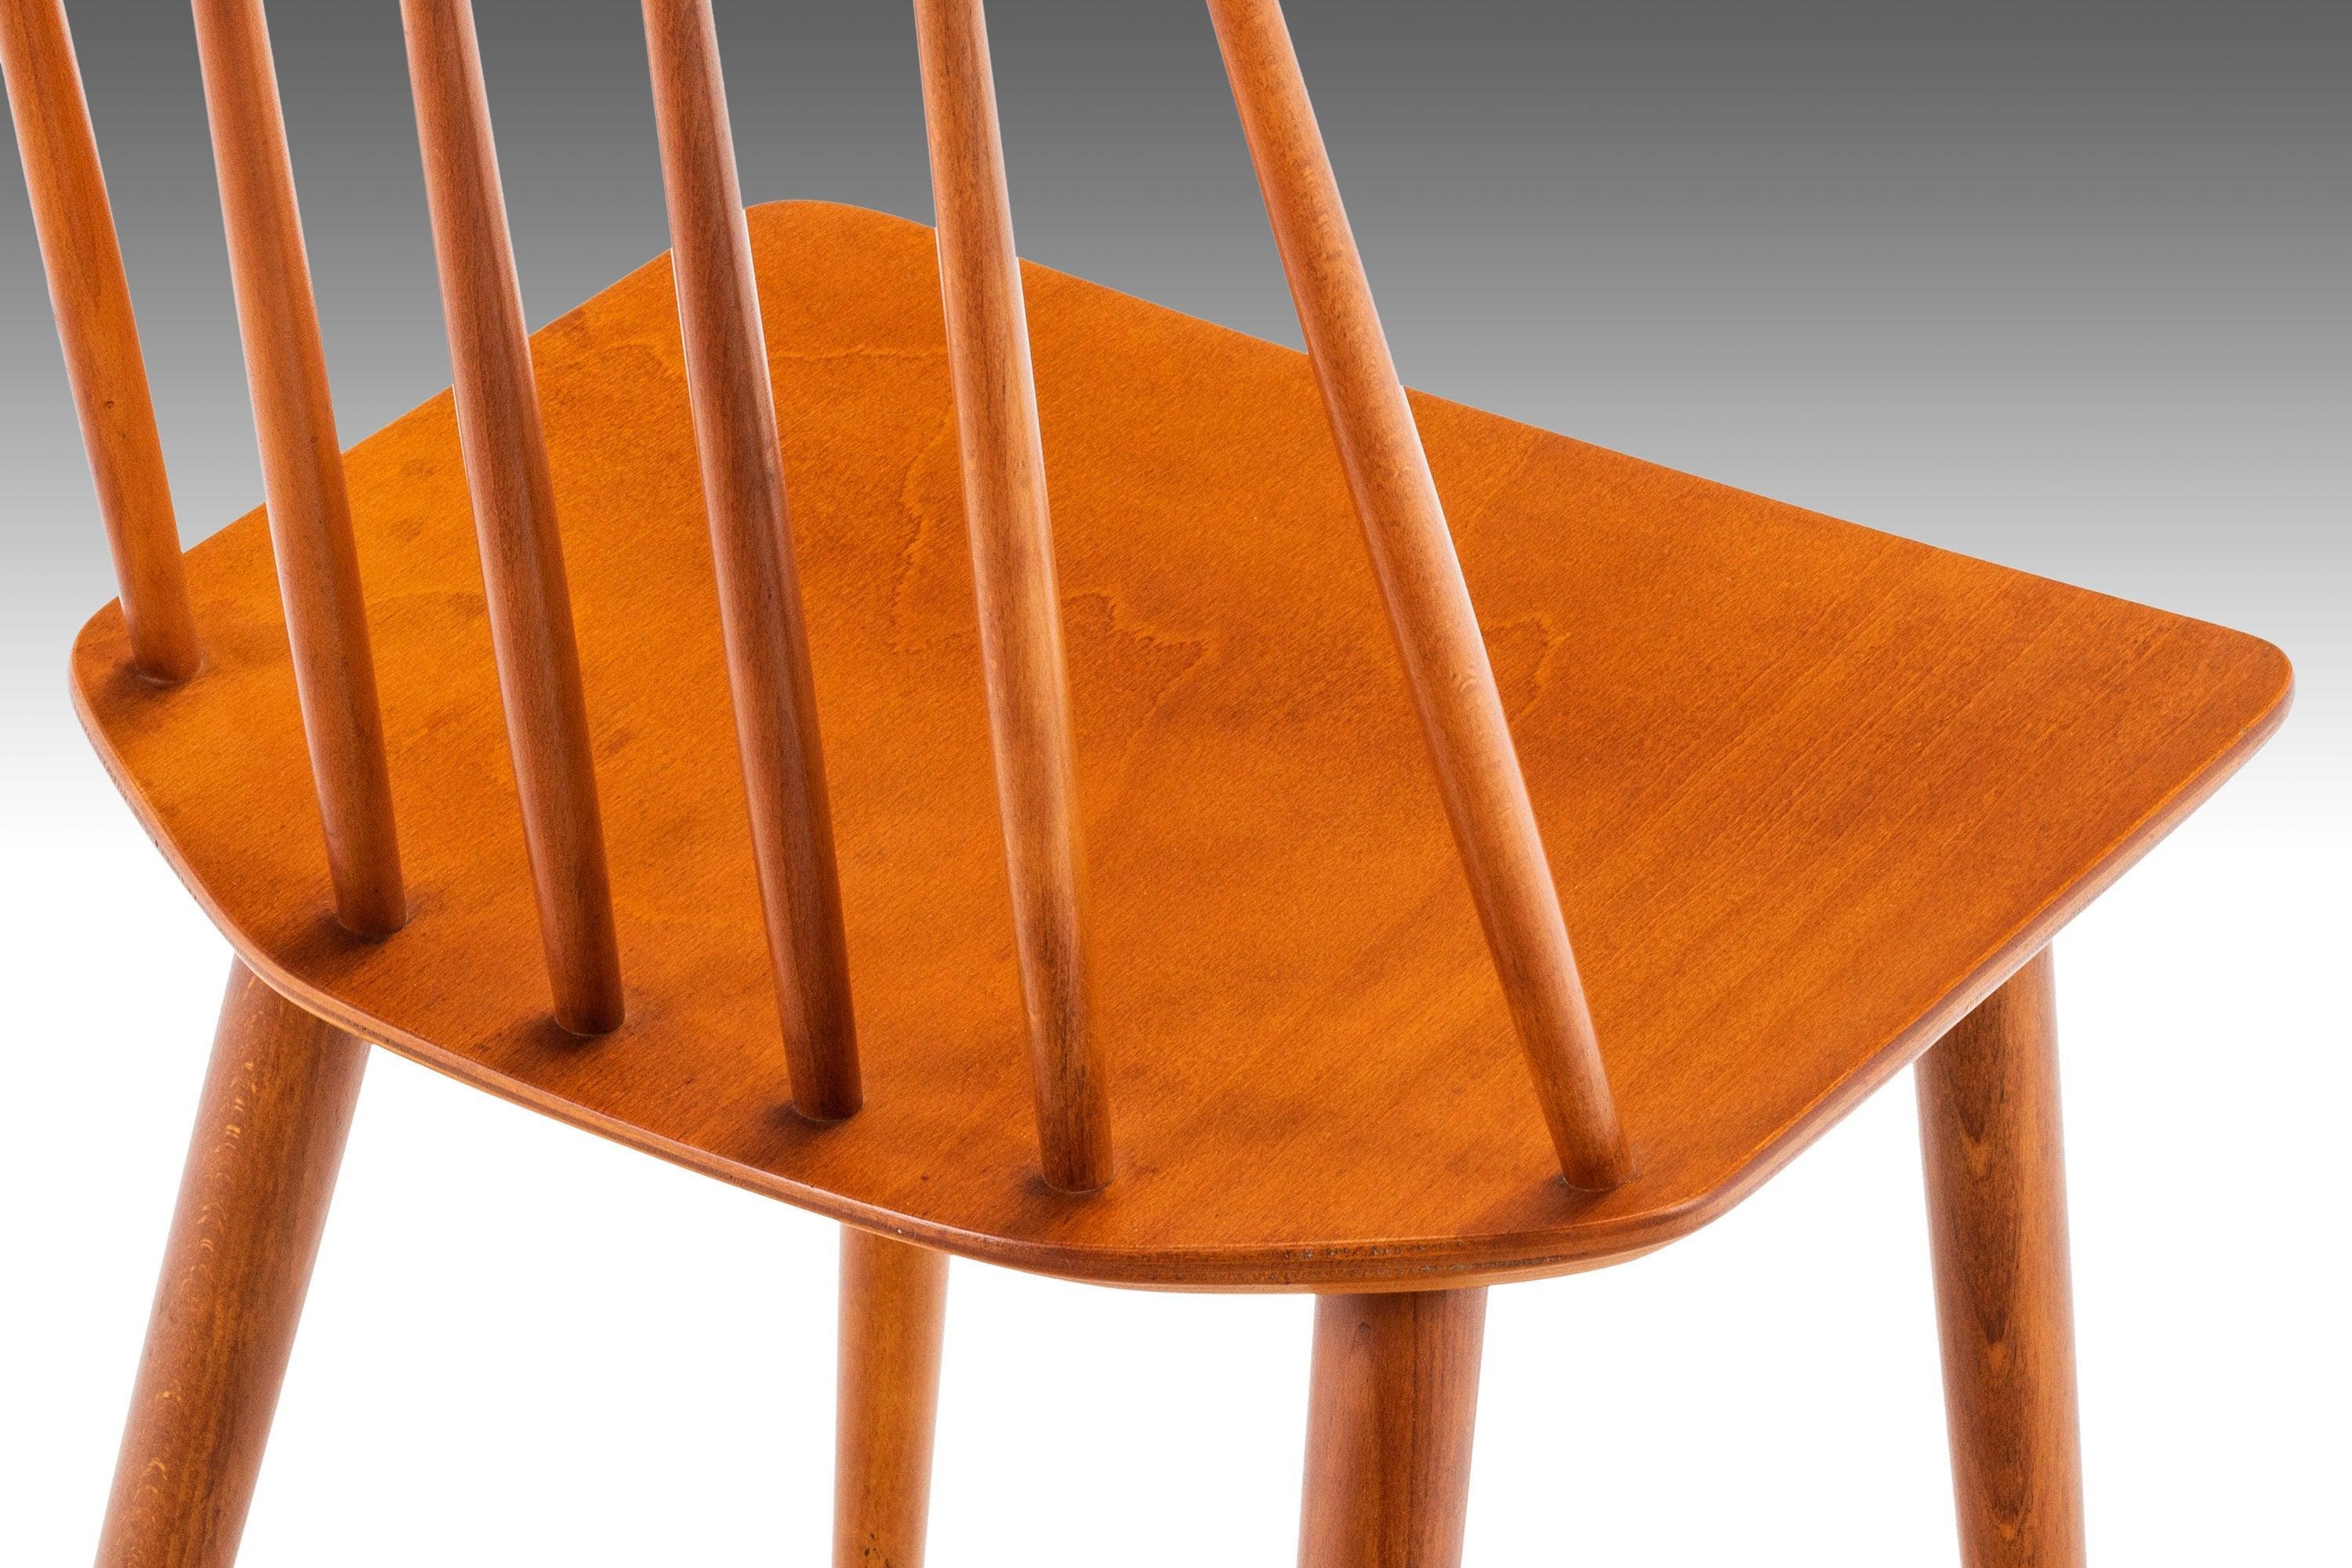 Conçu par Folke Palsson pour FDB Møbelfabrik, le J 77 est l'amalgame parfait entre l'esthétique rustique d'une ferme et le design minimaliste danois. Construite en teck massif avec des grains de bois exceptionnels, cette chaise d'appoint est